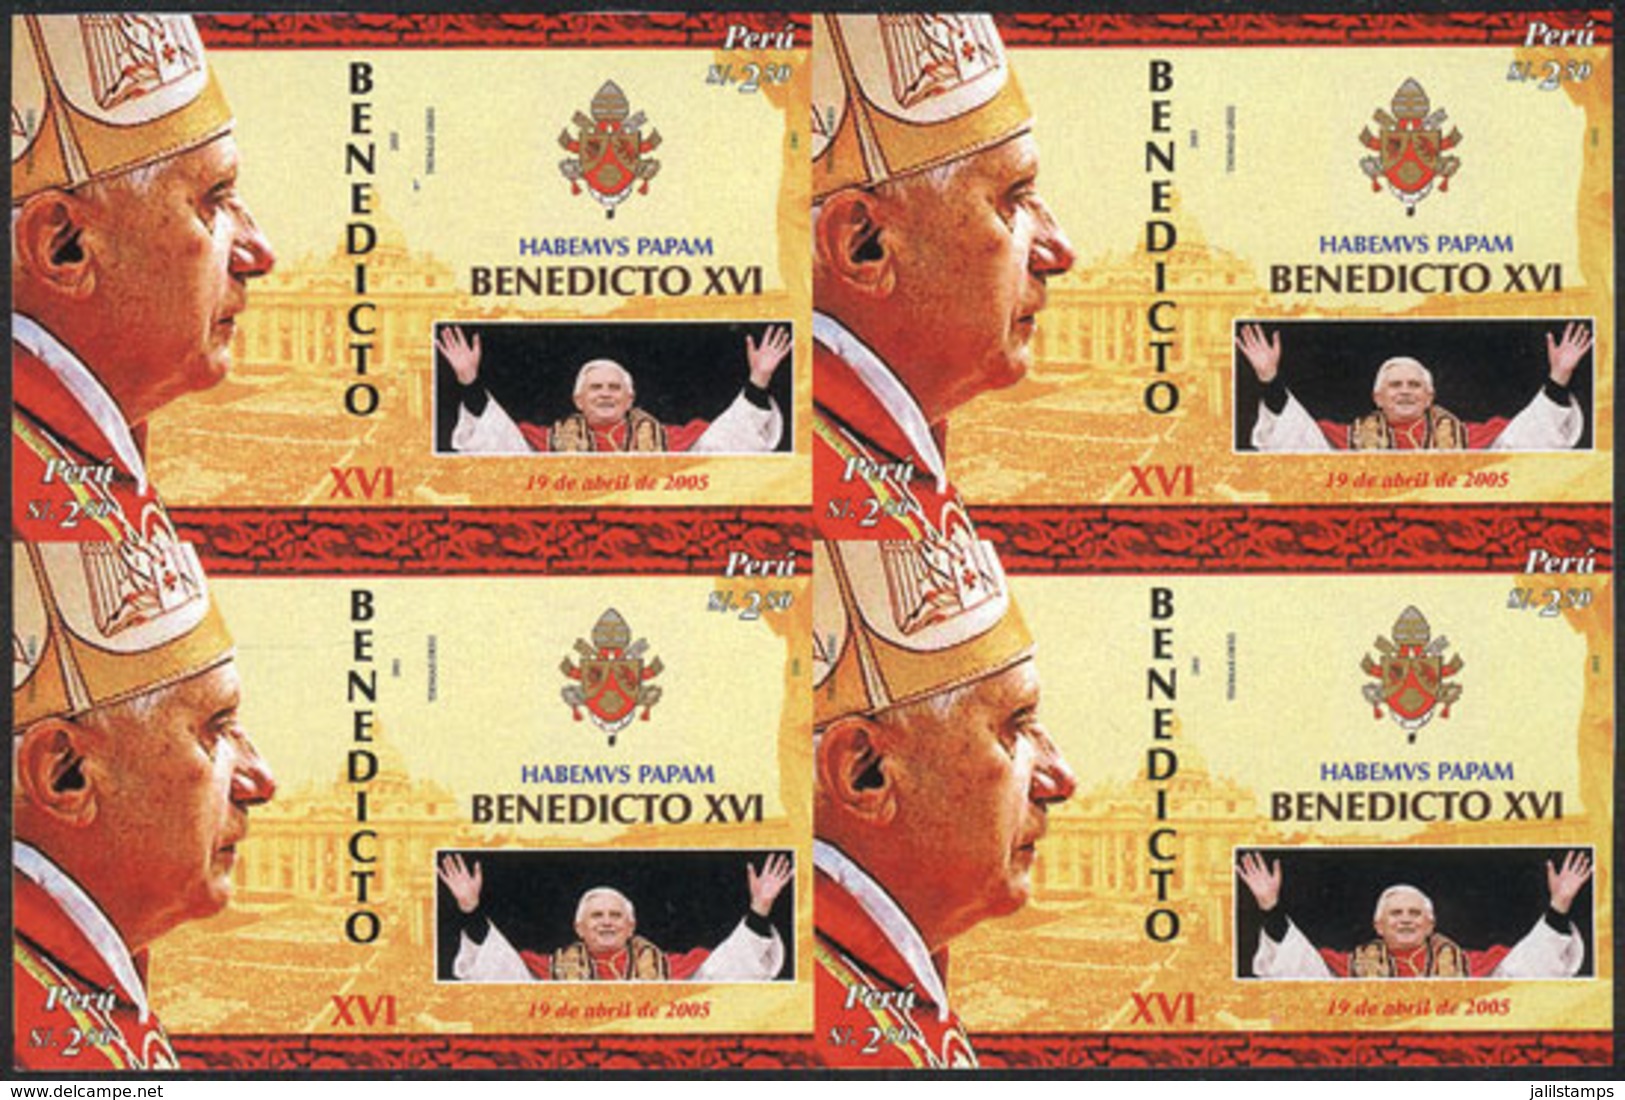 PERU: Sc.1489, 2006 Pope Benedict XVI, IMPERFORATE BLOCK OF 4 Consisting Of 4 Sets, Excellent Quality, Rare! - Perù